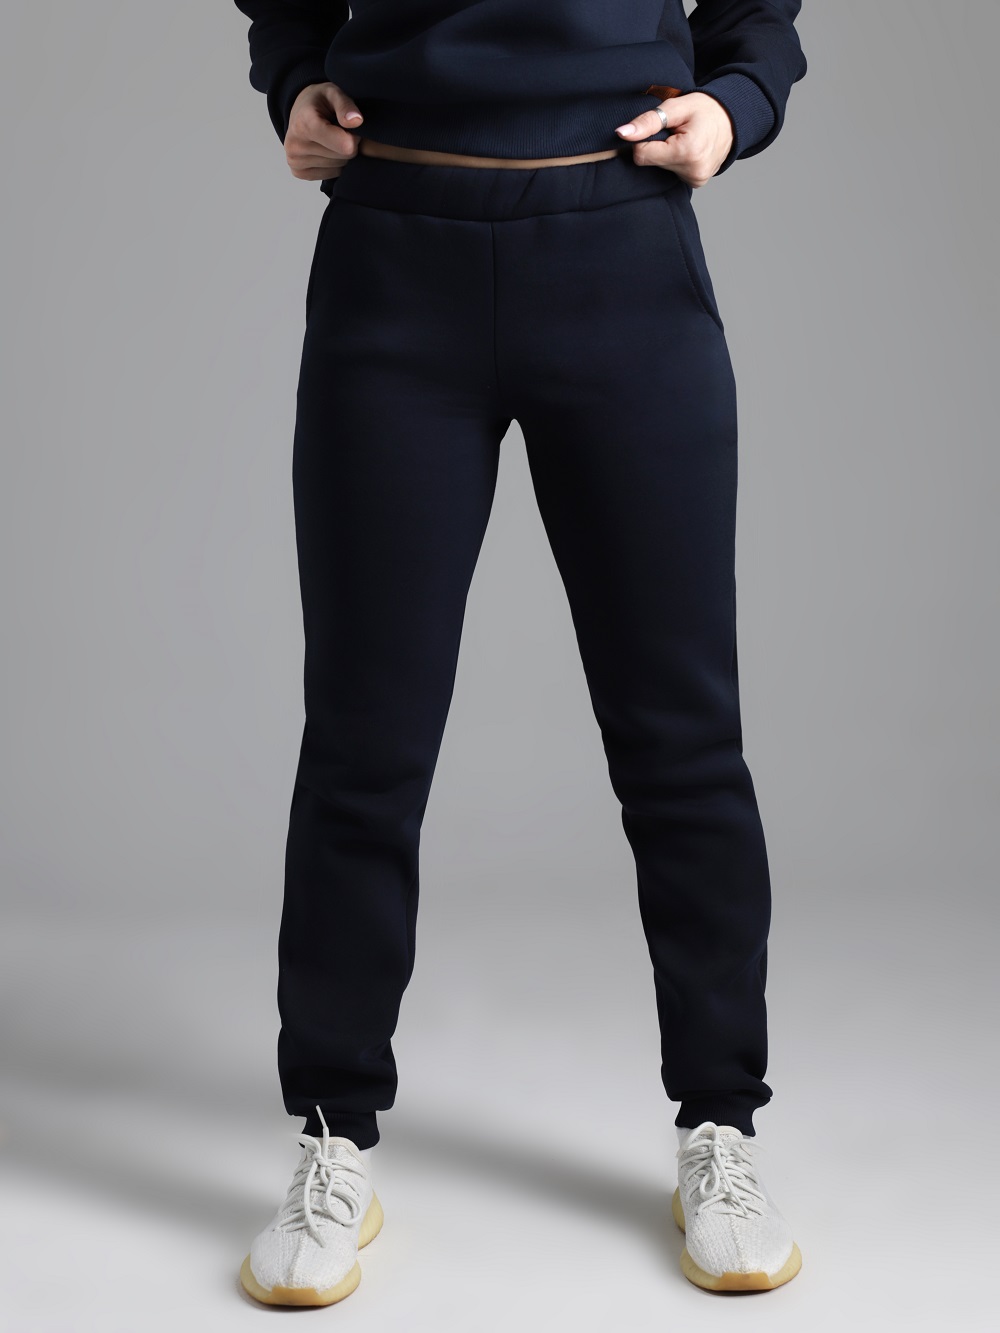 Спортивные брюки женские GeoLuk GBW12 синие 54 RU